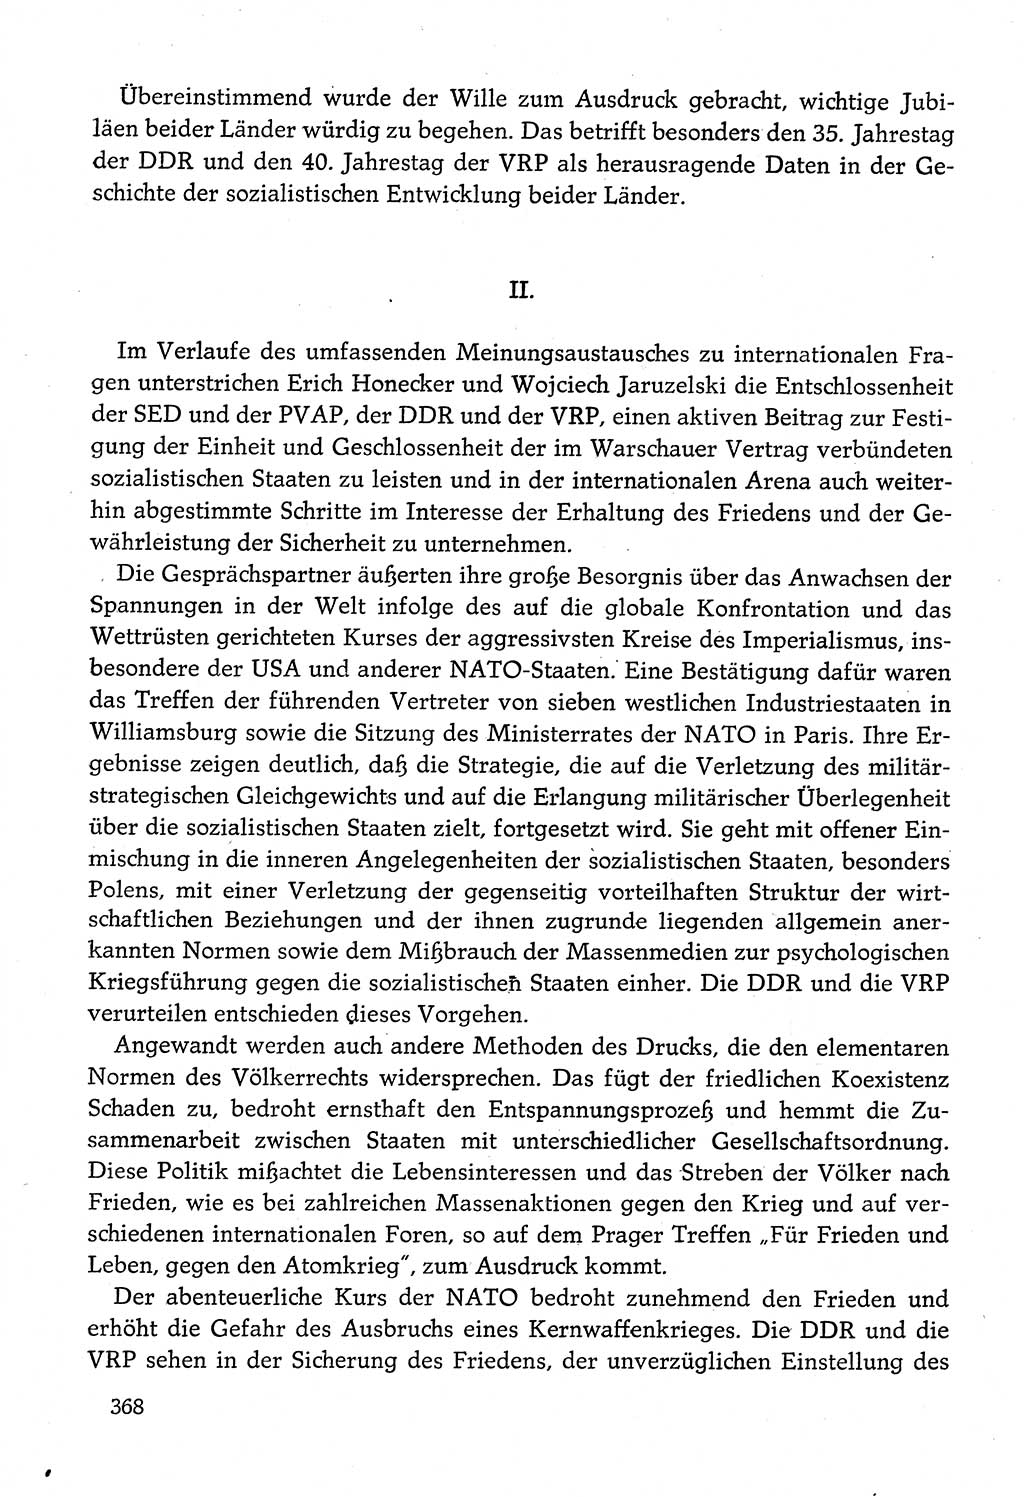 Dokumente der Sozialistischen Einheitspartei Deutschlands (SED) [Deutsche Demokratische Republik (DDR)] 1982-1983, Seite 368 (Dok. SED DDR 1982-1983, S. 368)